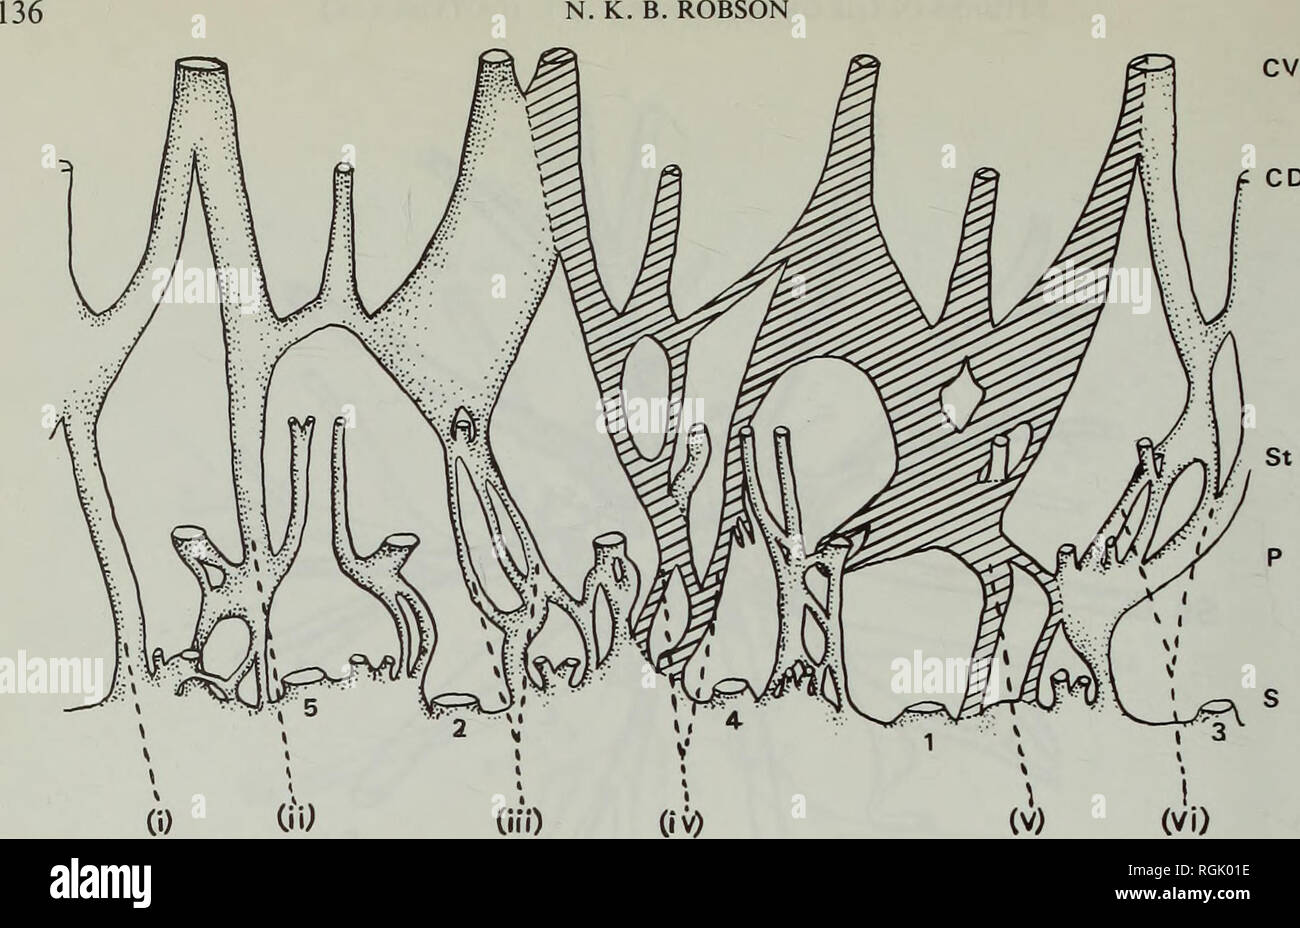 . Bollettino del Museo Britannico di Storia Naturale) Botanica. N. K. B. ROBSON. Fig. 40 Piano di toral vascolatura di un 4-carpellary fiore di H. natalense (sez. 26), che mostra che la traccia per carpel 4 è derivato da quello di carpel 1 di 3-carpellary gynoecium. organi. In minori a fiore specie (H. pulchrum (figure 39, 47e) e H. aethiopicum subsp. sonderi), il piano vascolare è essenzialmente simile ma più semplice, come è nella specie con fasciclodes, H. aegypticum e H. elodes (Robson, 1972a : figg 8,9). (E) Sez. Humifusoideum Saunders (1937) esaminato Hypericum peplidifolium perché Foto Stock